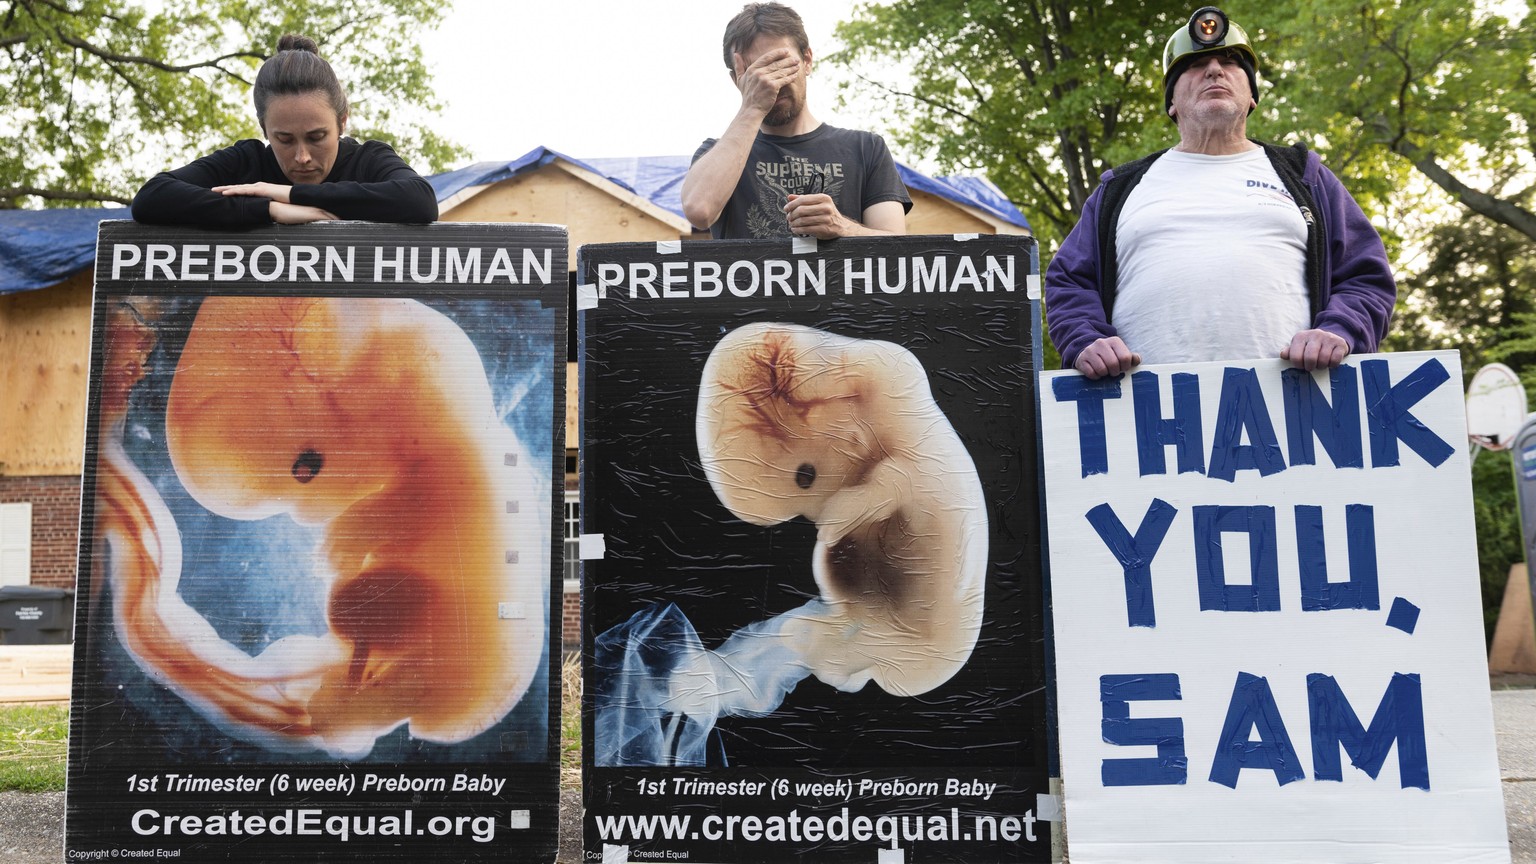 Demonstrierende, die für ein Verbot der Abtreibung sind, USA, 5. Mai 2022.